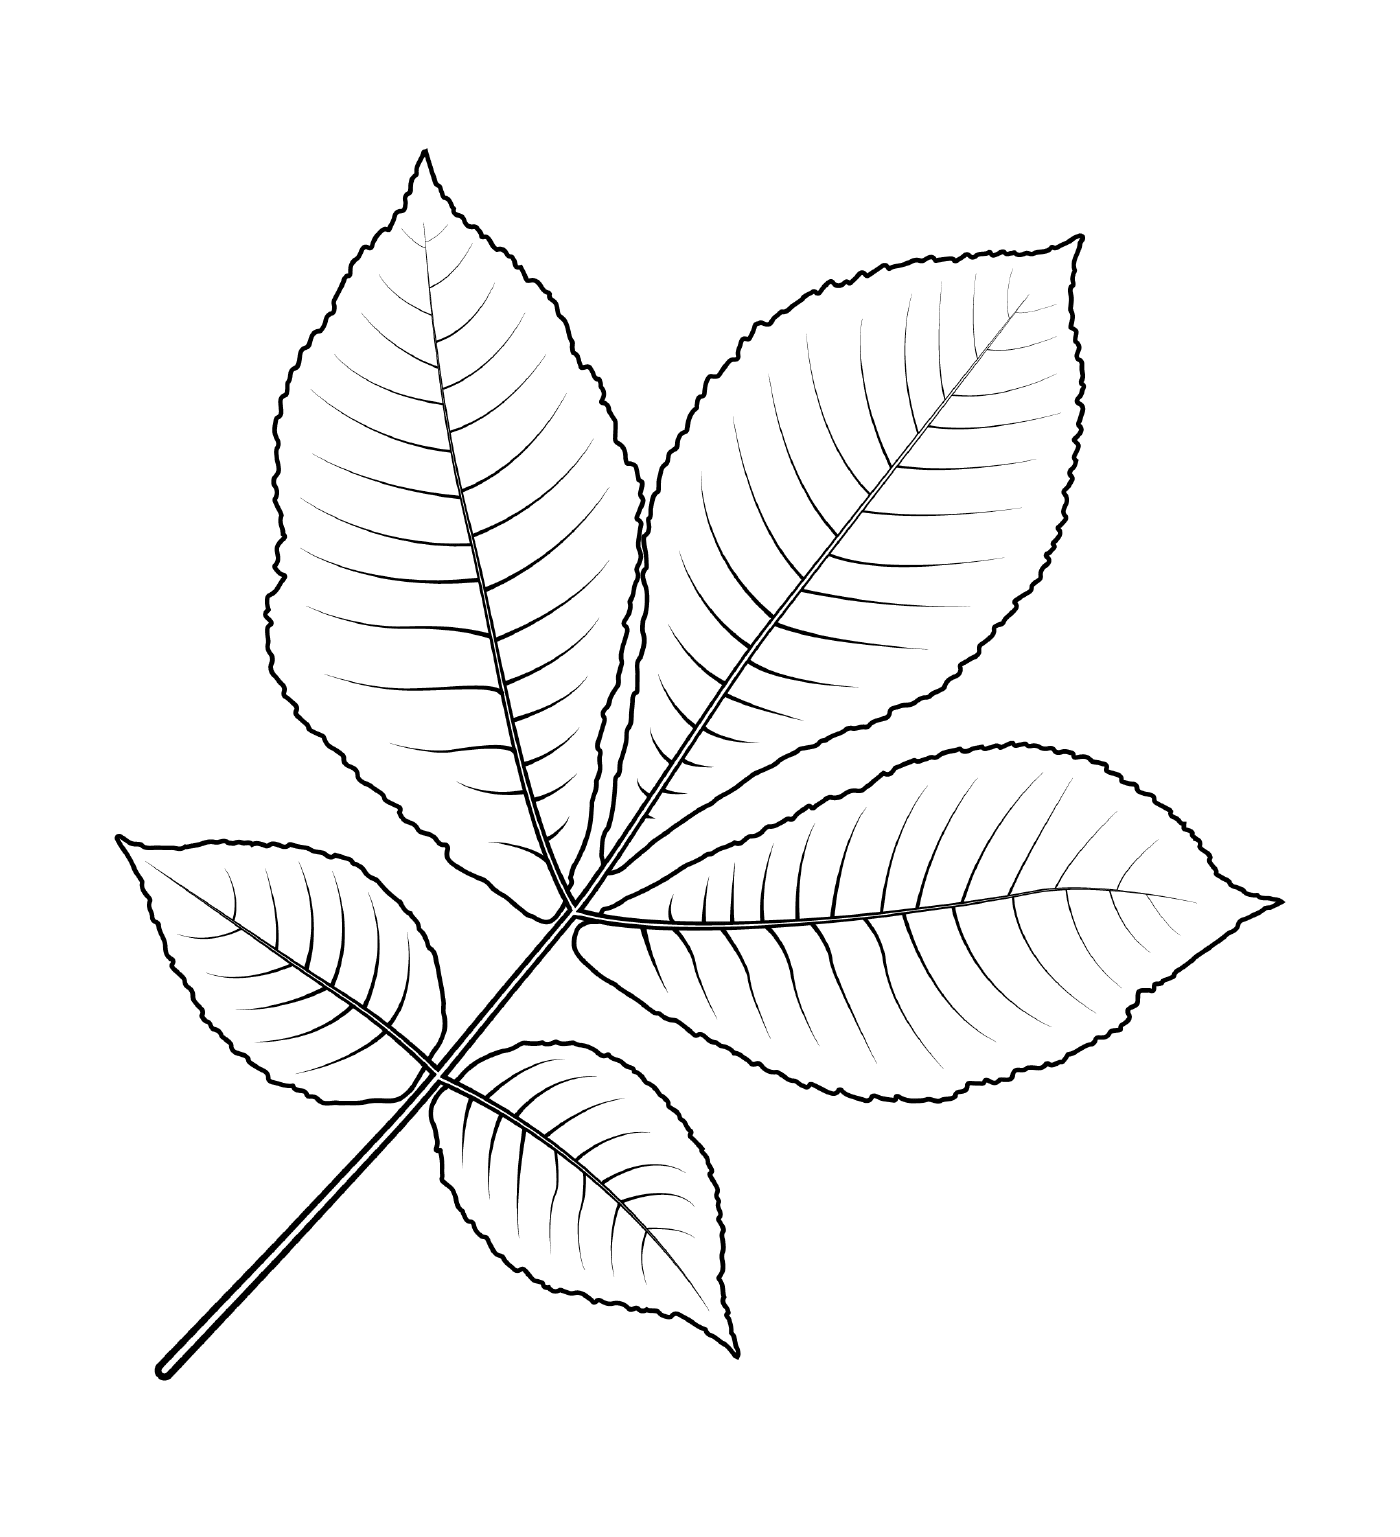  Short-bark caryer leaf 